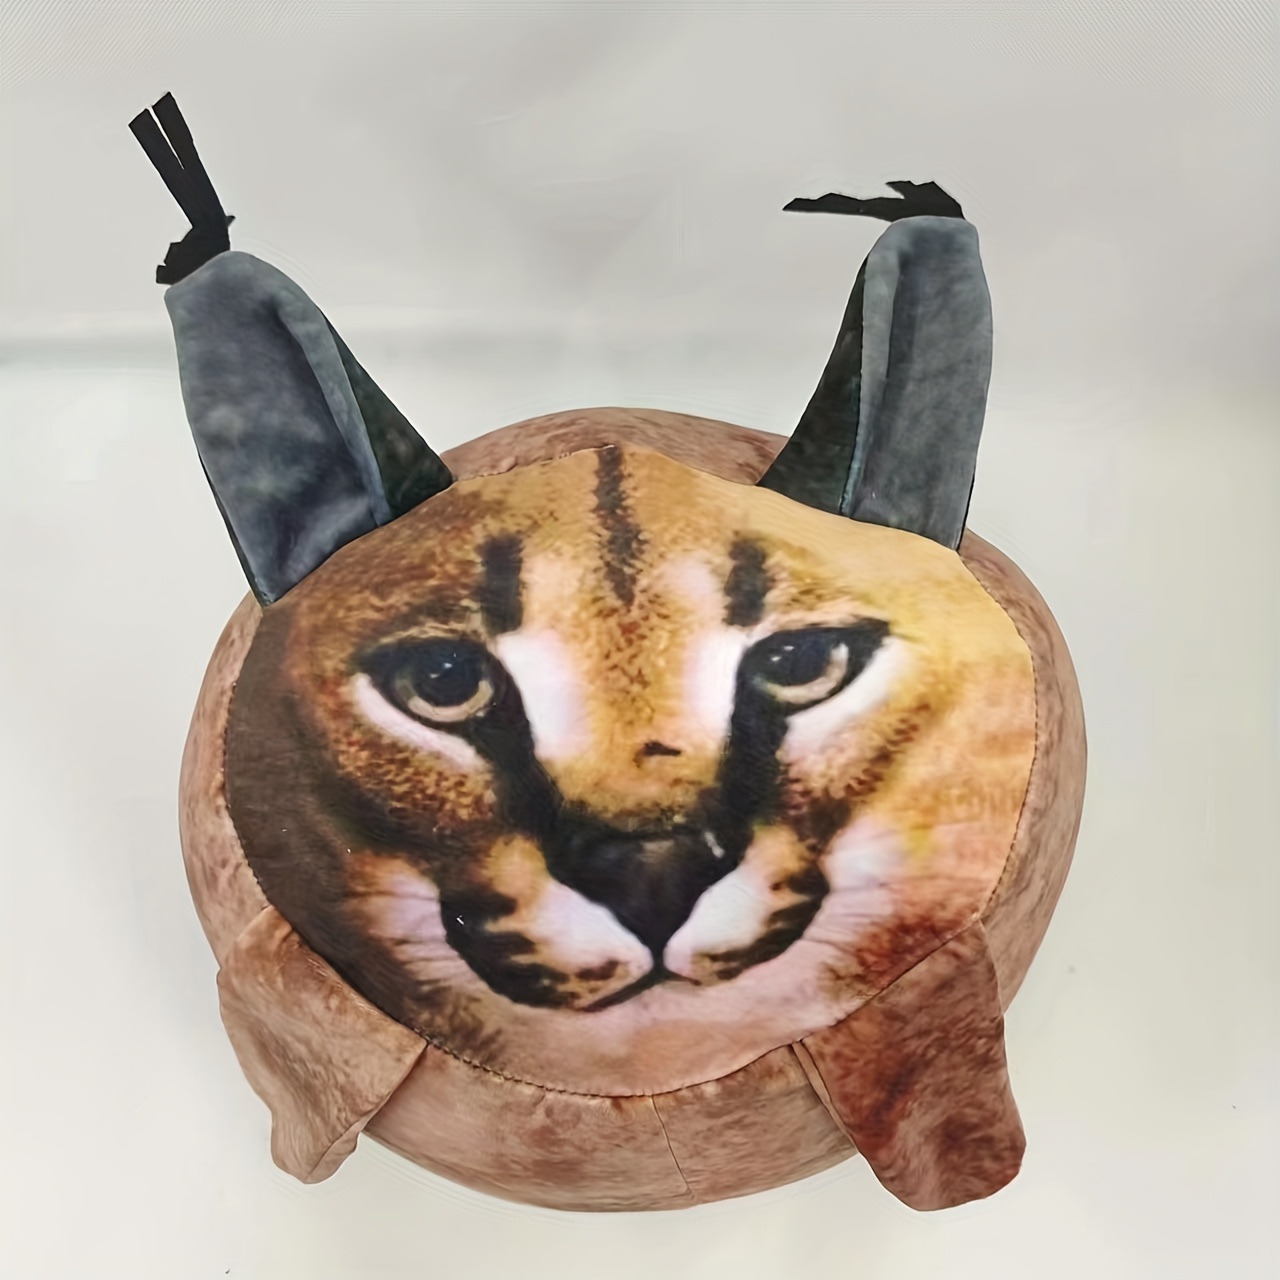 Big floppa plush brinquedo de pelúcia simulação gato travesseiro